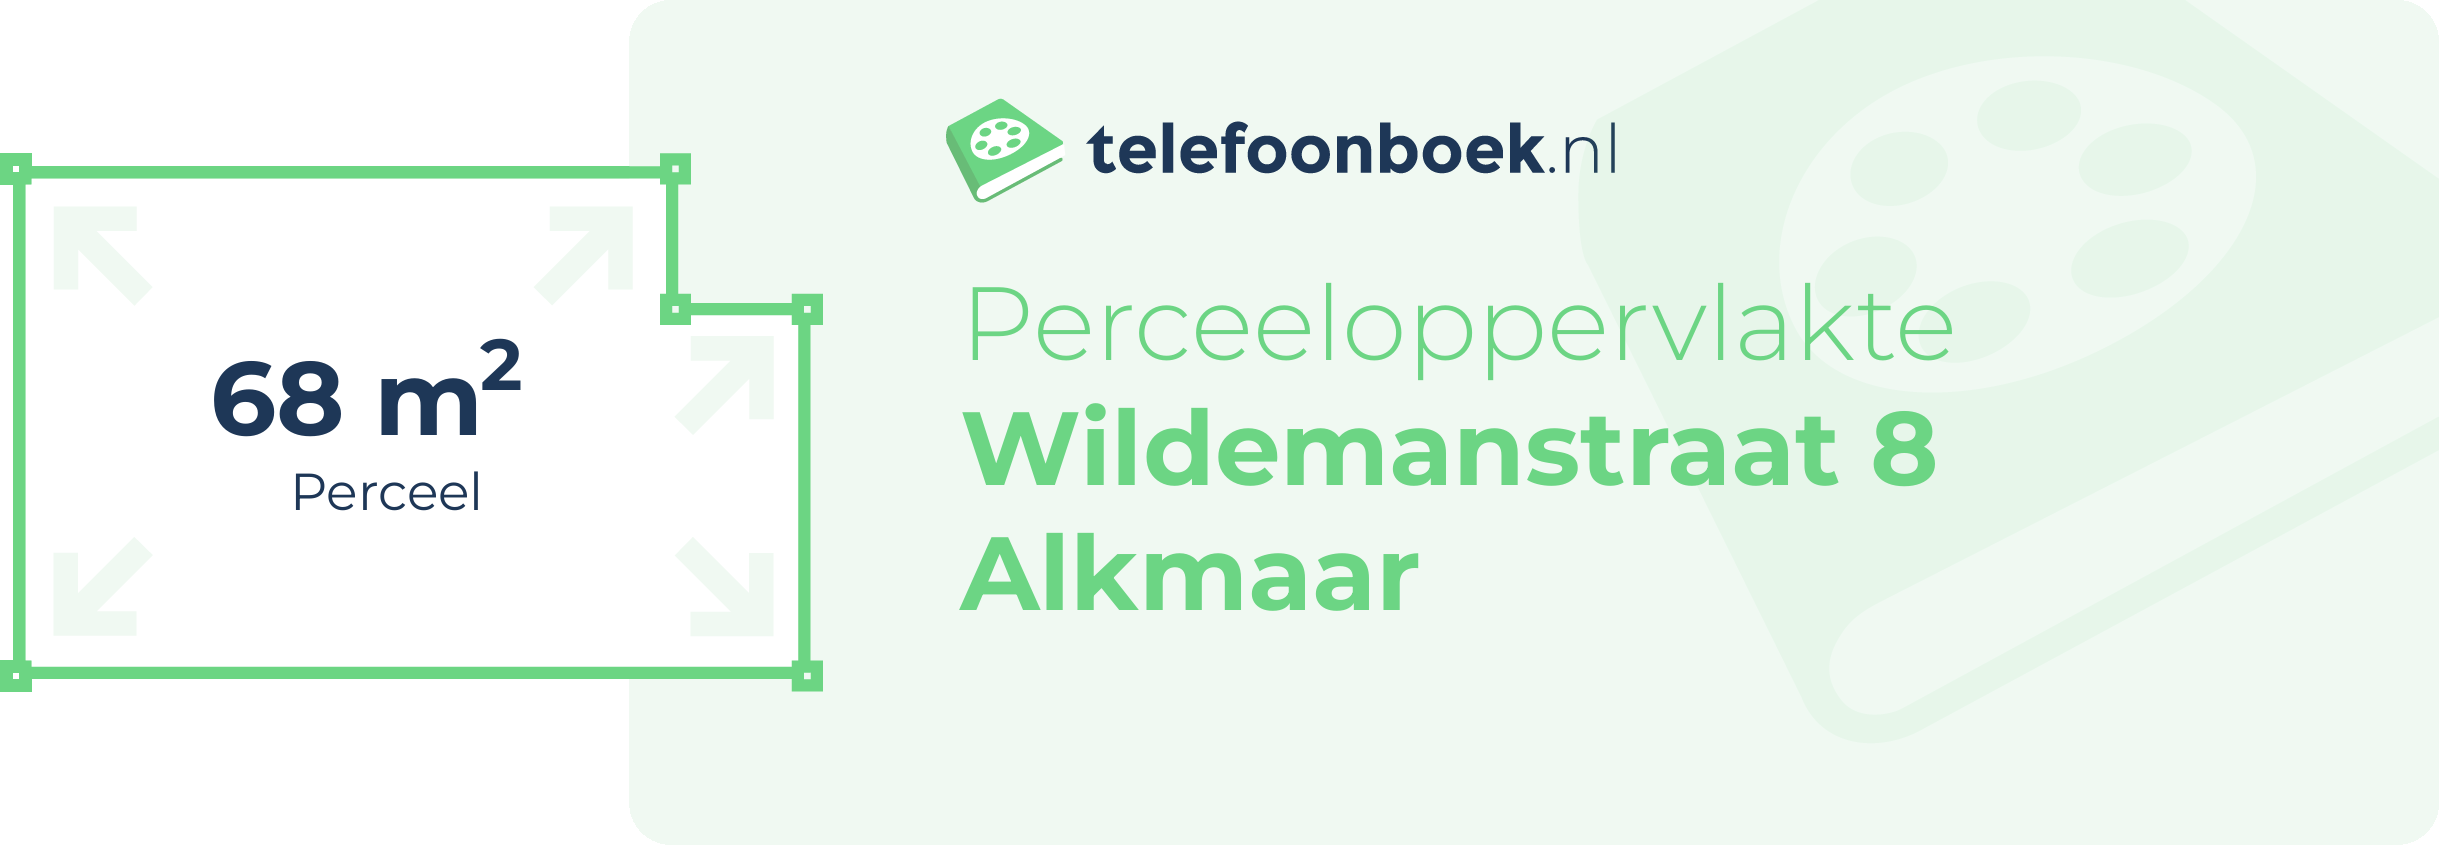 Perceeloppervlakte Wildemanstraat 8 Alkmaar